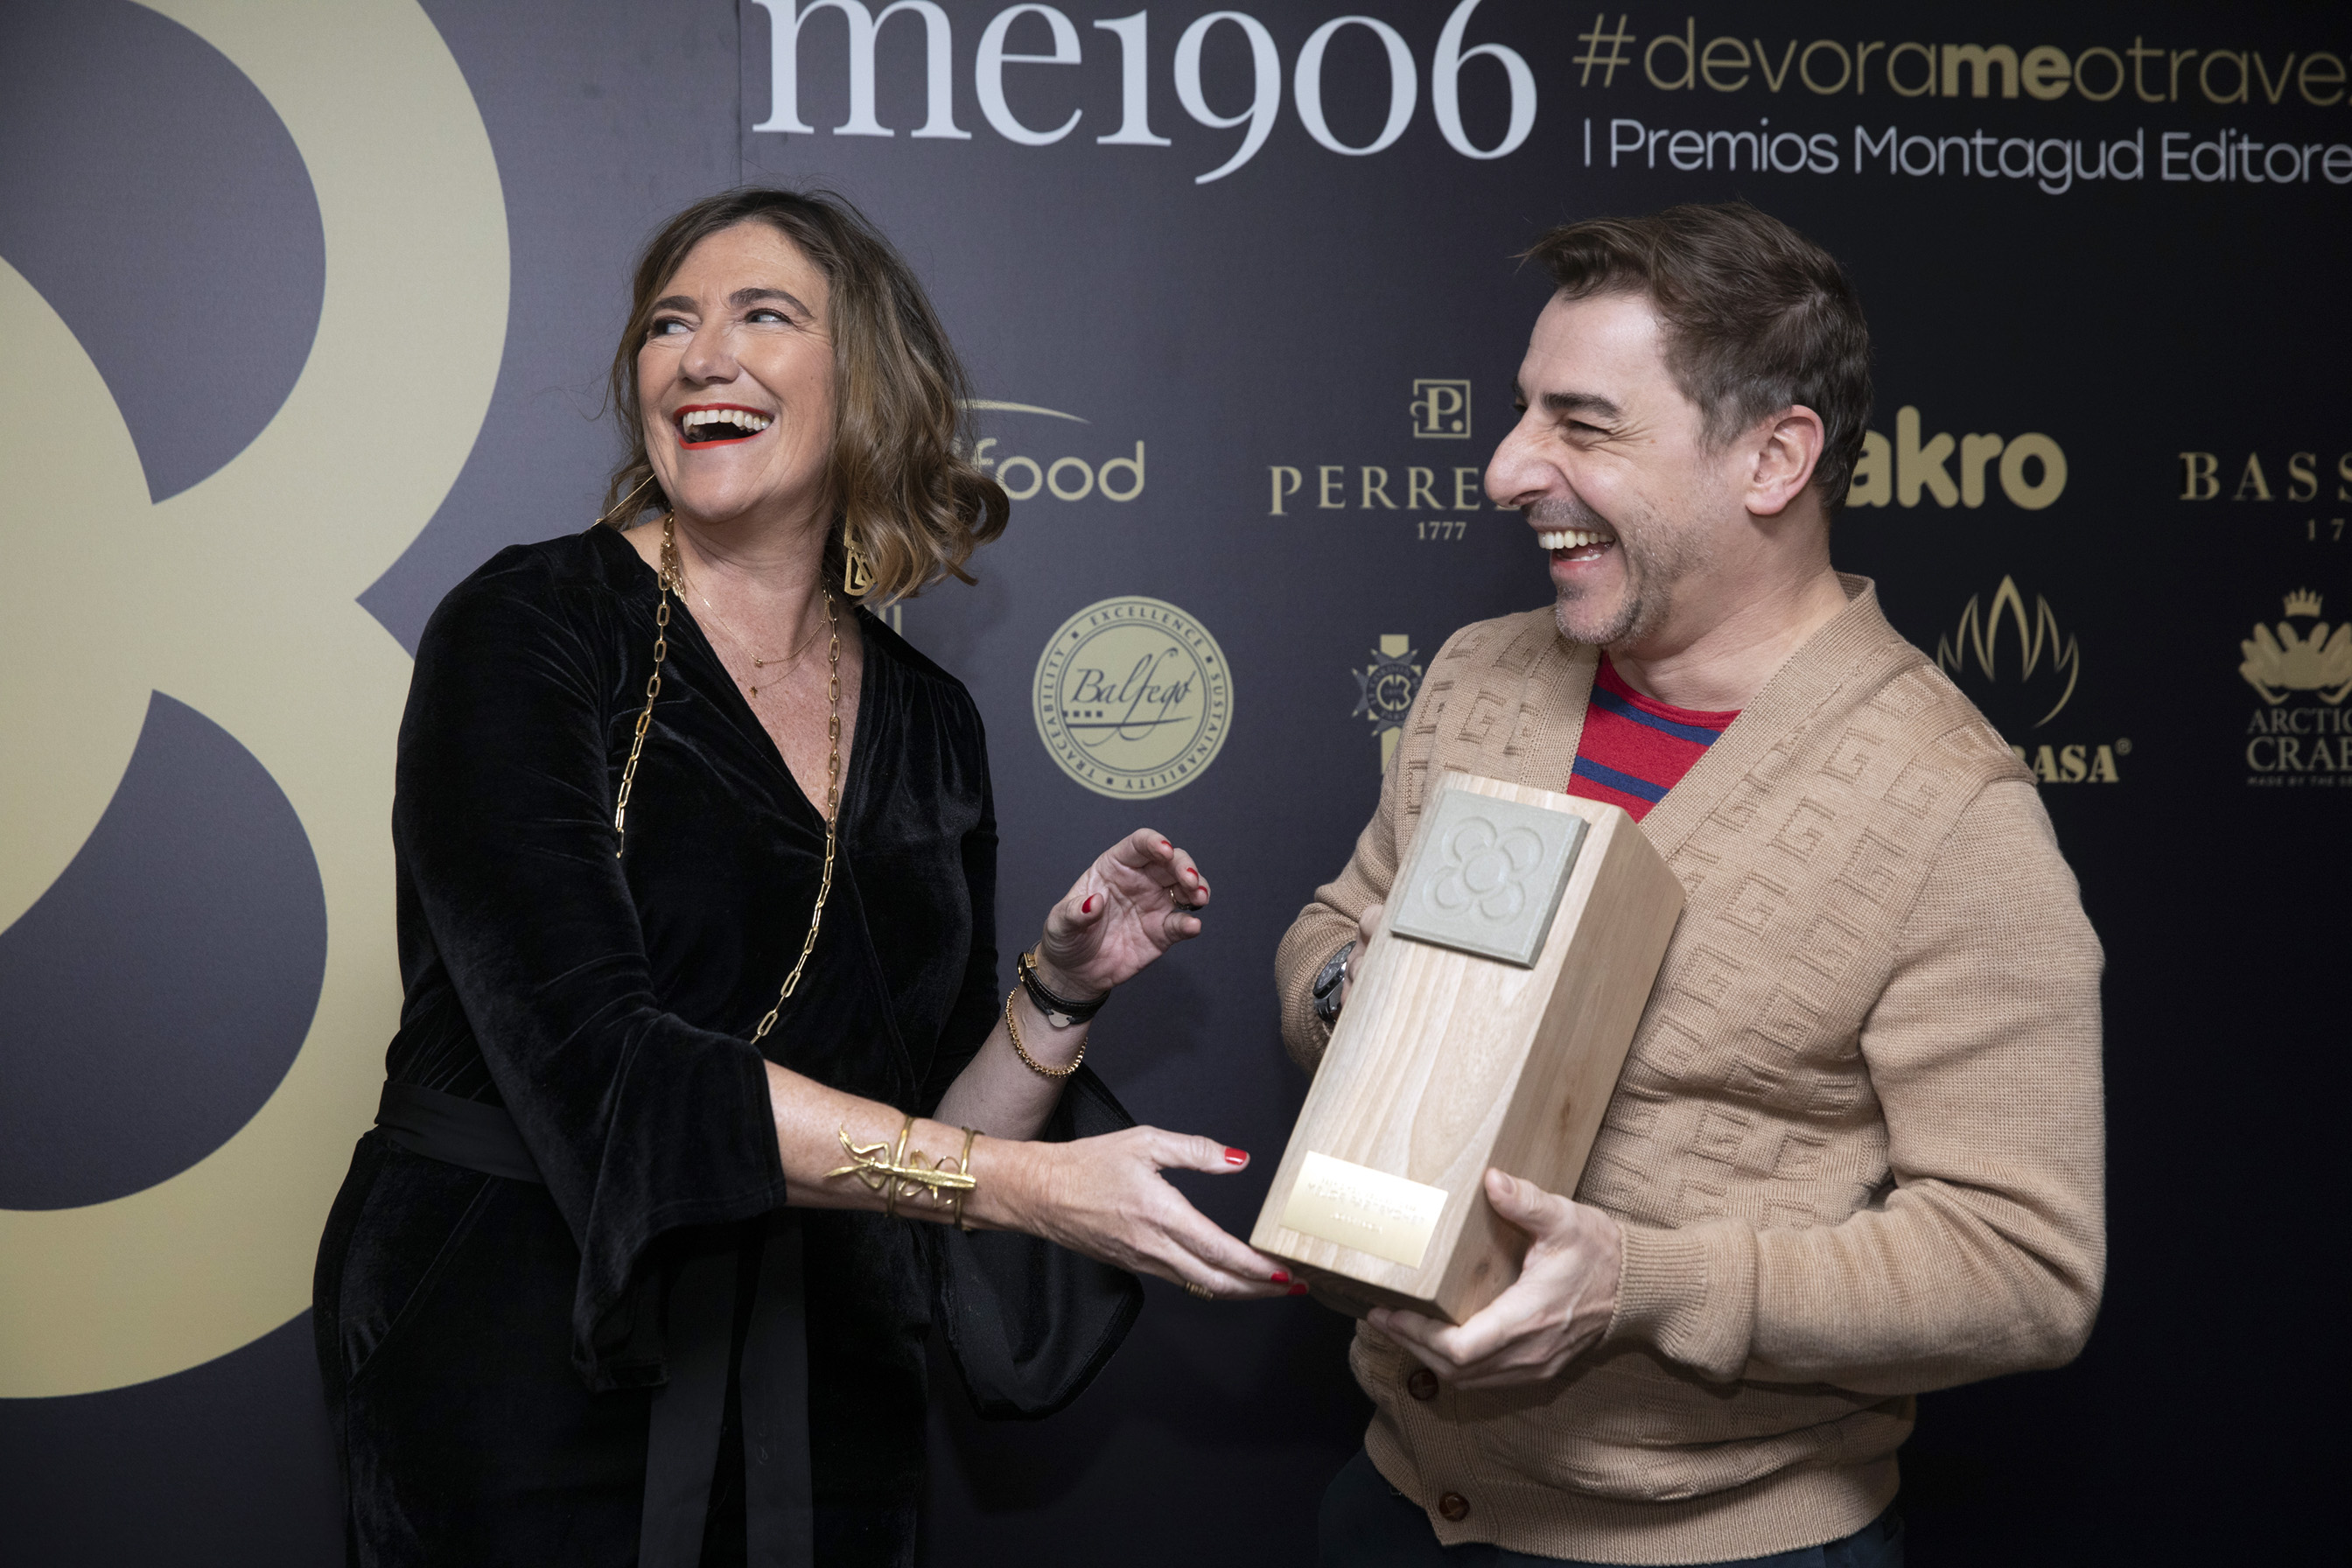 Le Cordon Bleu Madrid en los Premios Montagud Editores